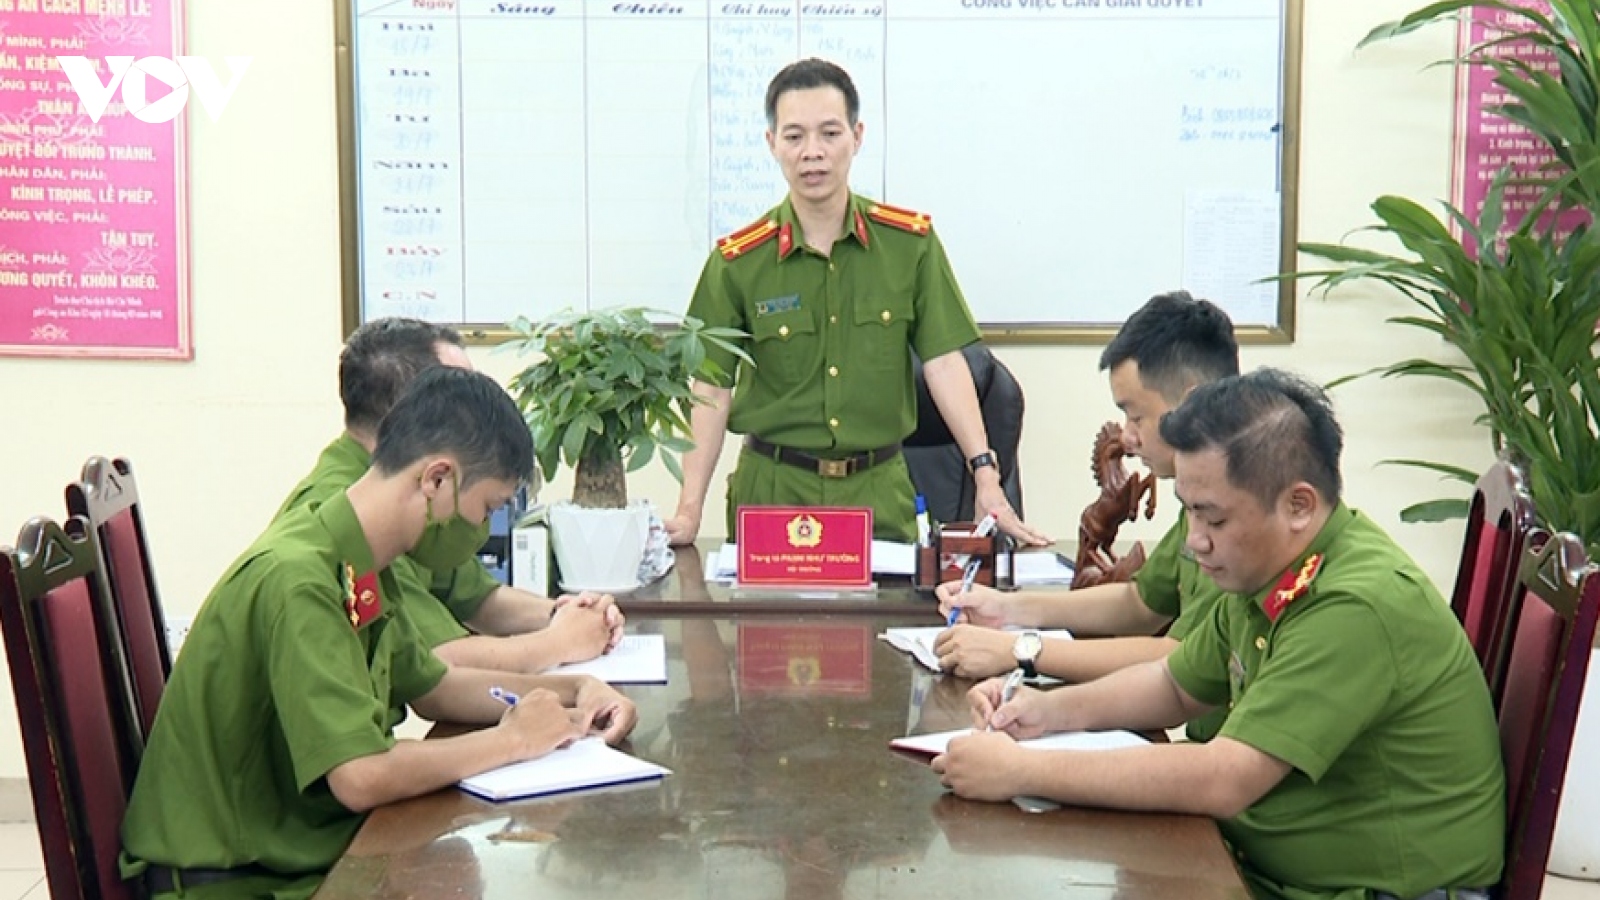 Trung tá công an kể chuyện bắt giữ đối tượng ma túy cộm cán ở Hà Nội 